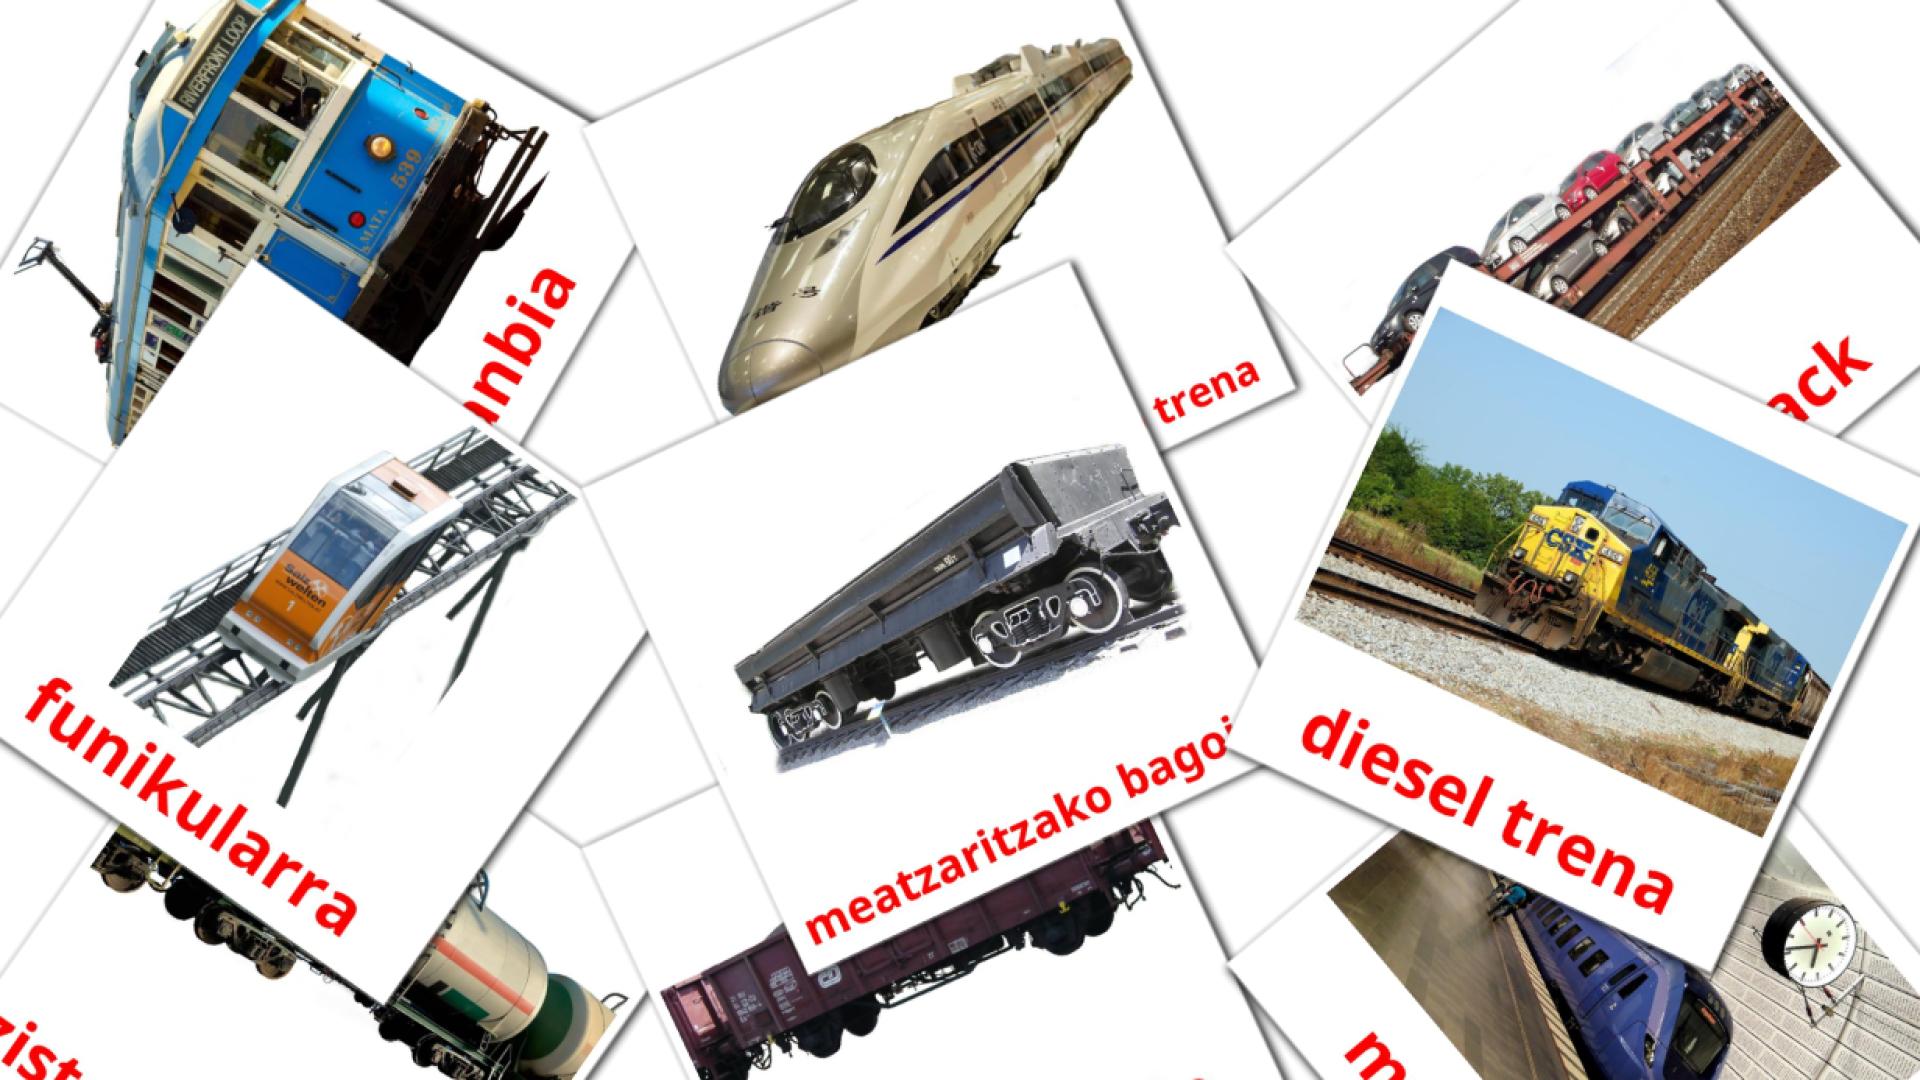 Rail transport - basque vocabulary cards